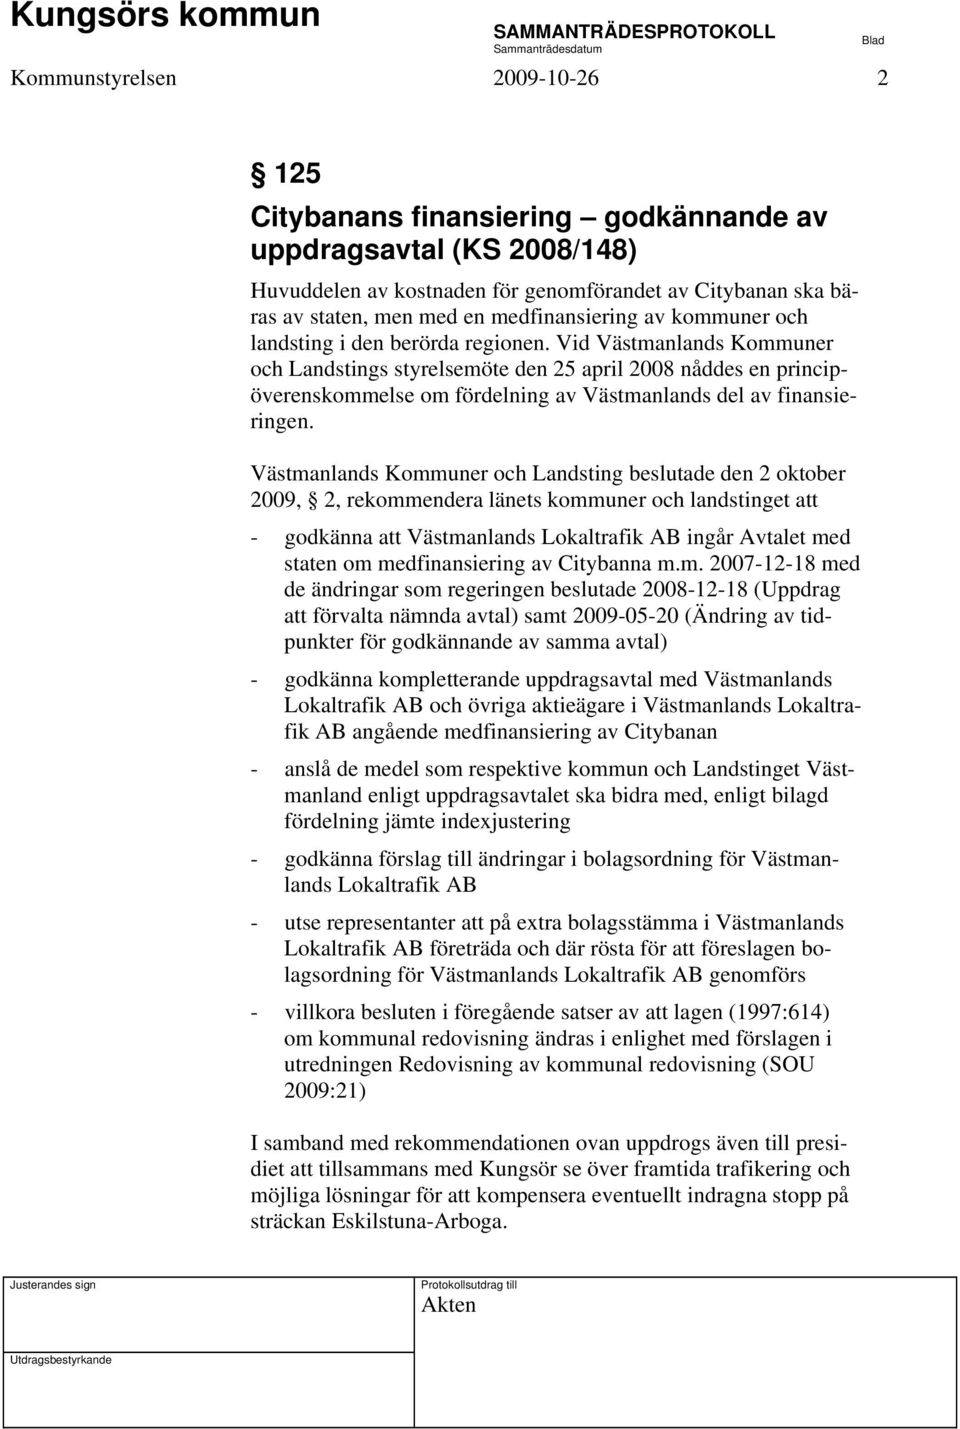 Vid Västmanlands Kommuner och Landstings styrelsemöte den 25 april 2008 nåddes en principöverenskommelse om fördelning av Västmanlands del av finansieringen.